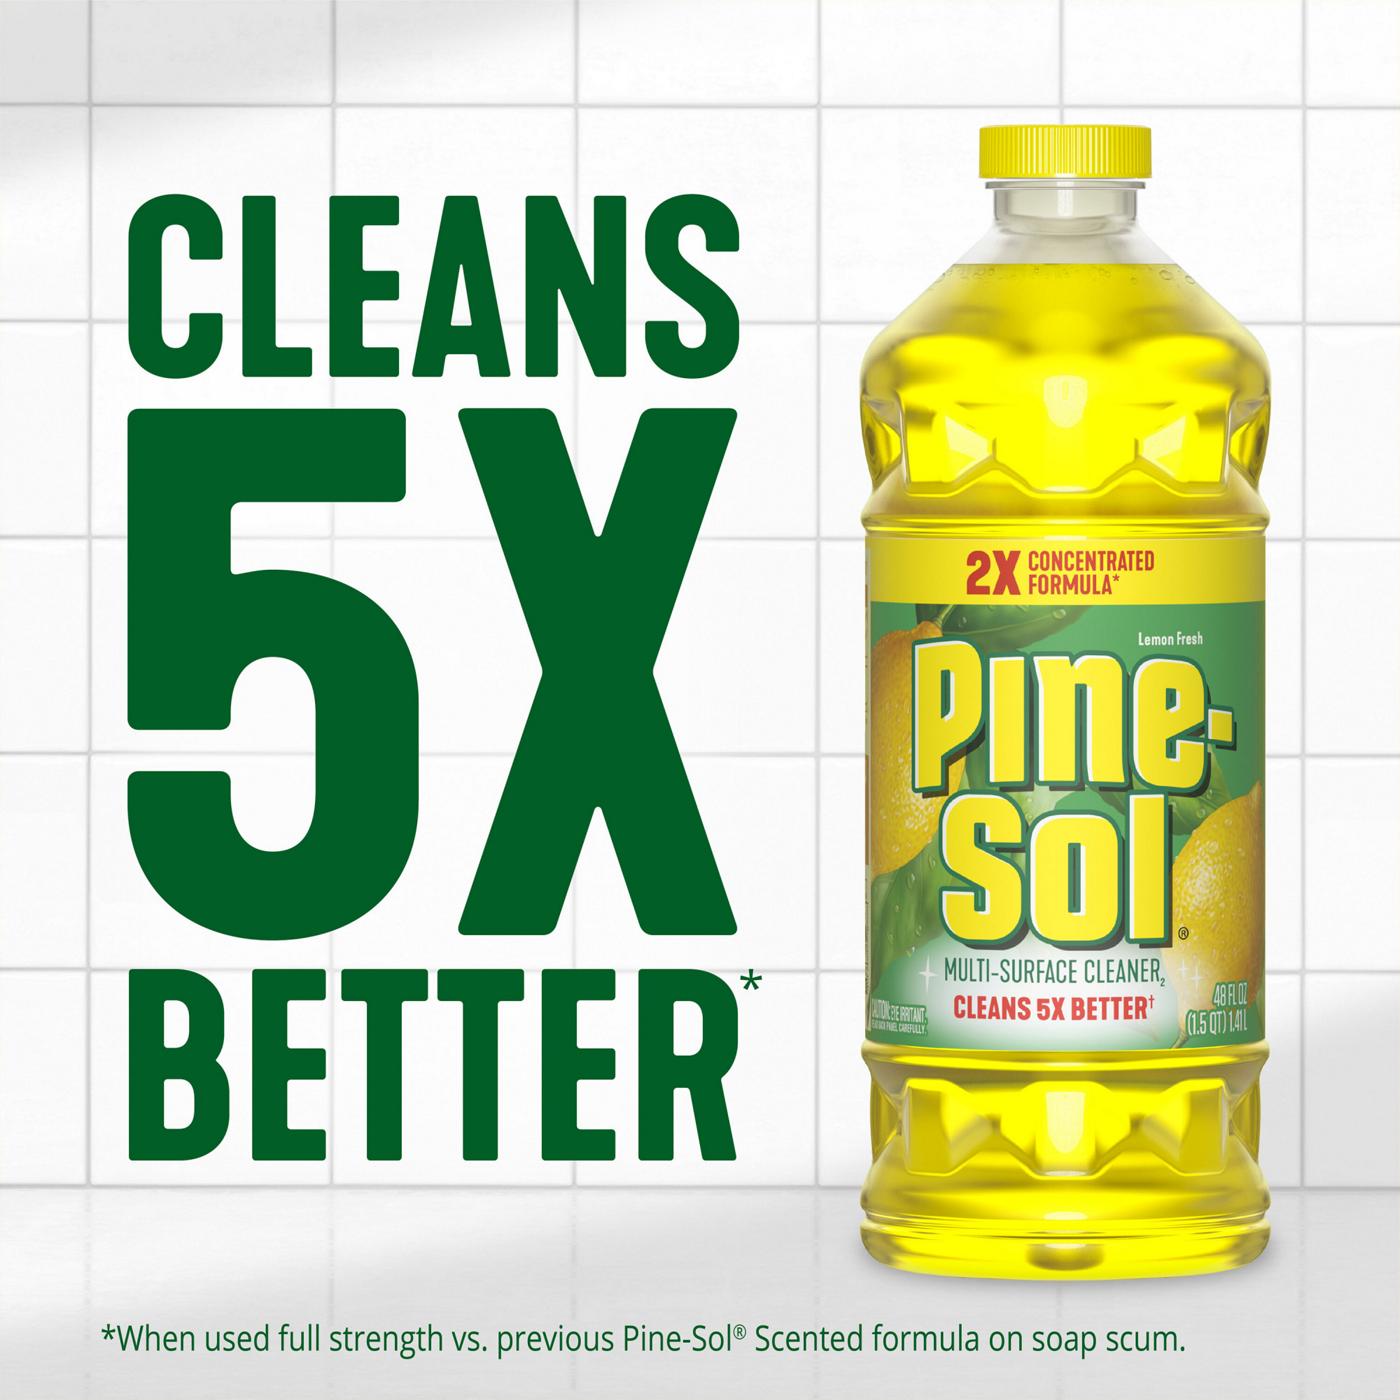 Pine-Sol Lemon Fresh Multi-Surface Cleaner; image 3 of 3